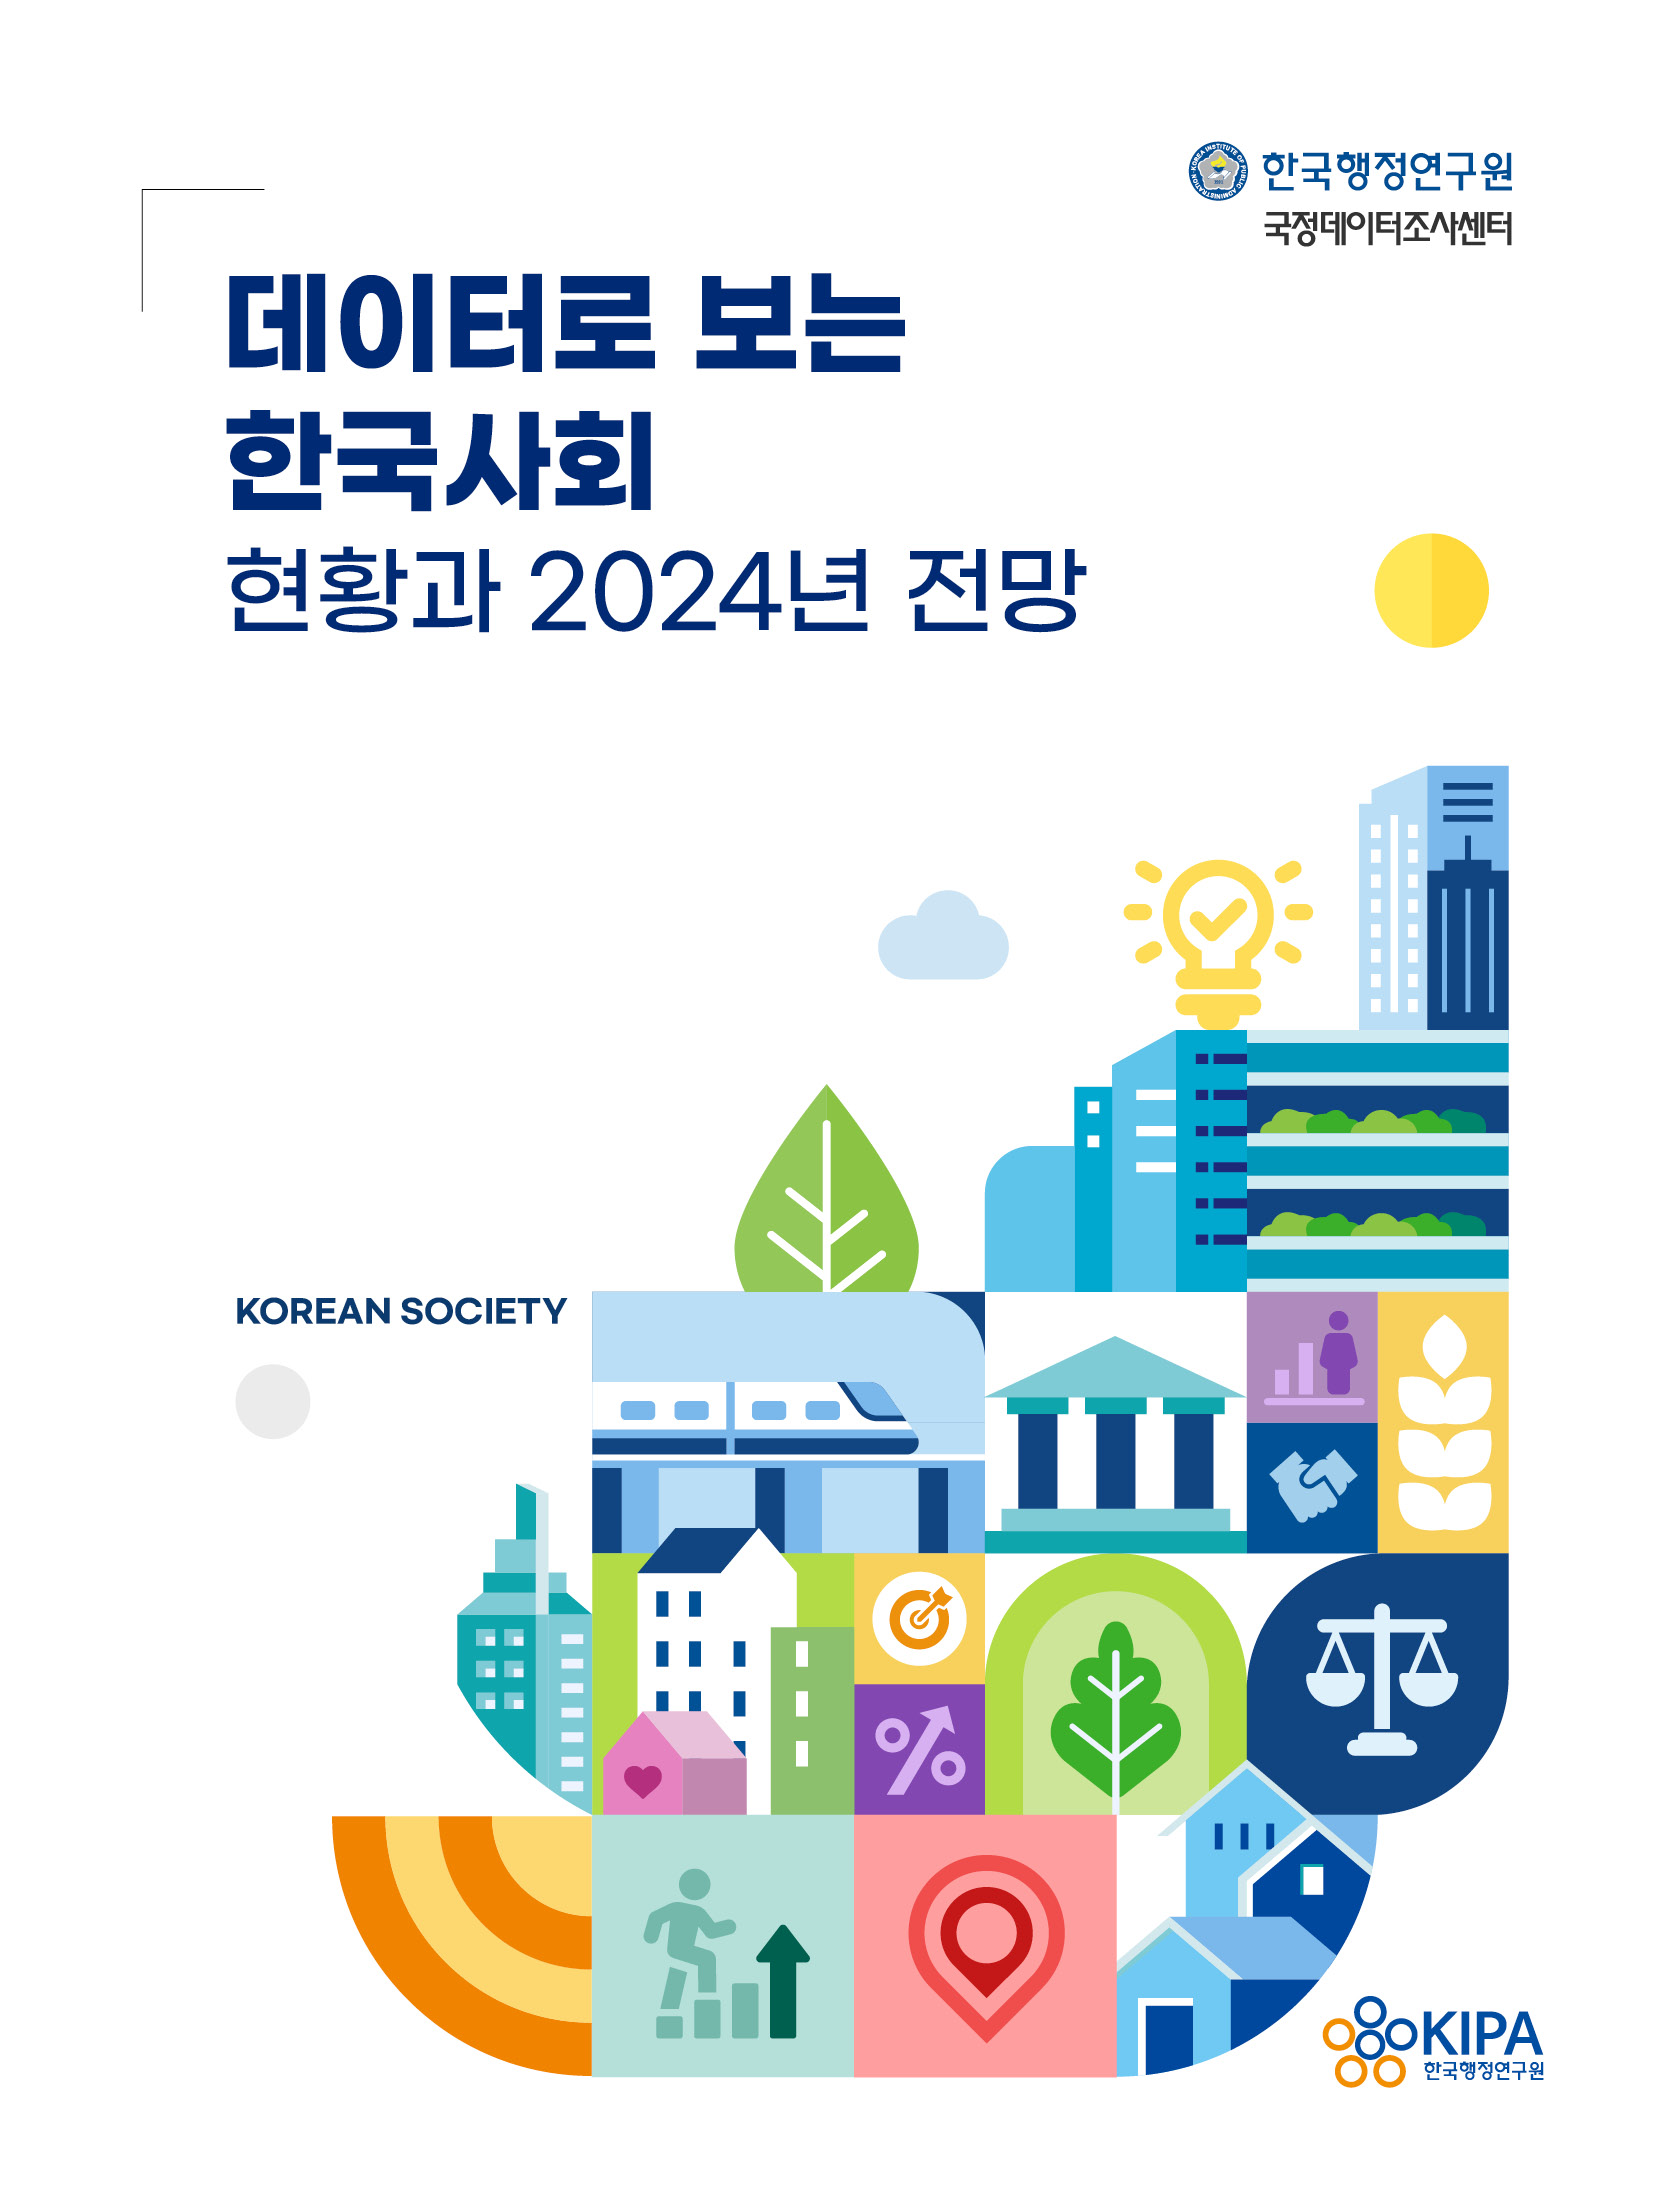 [2024년 데이터 브로슈어(Brochure)] 데이터로 보는 한국사회       – 현황과 2024년 전망